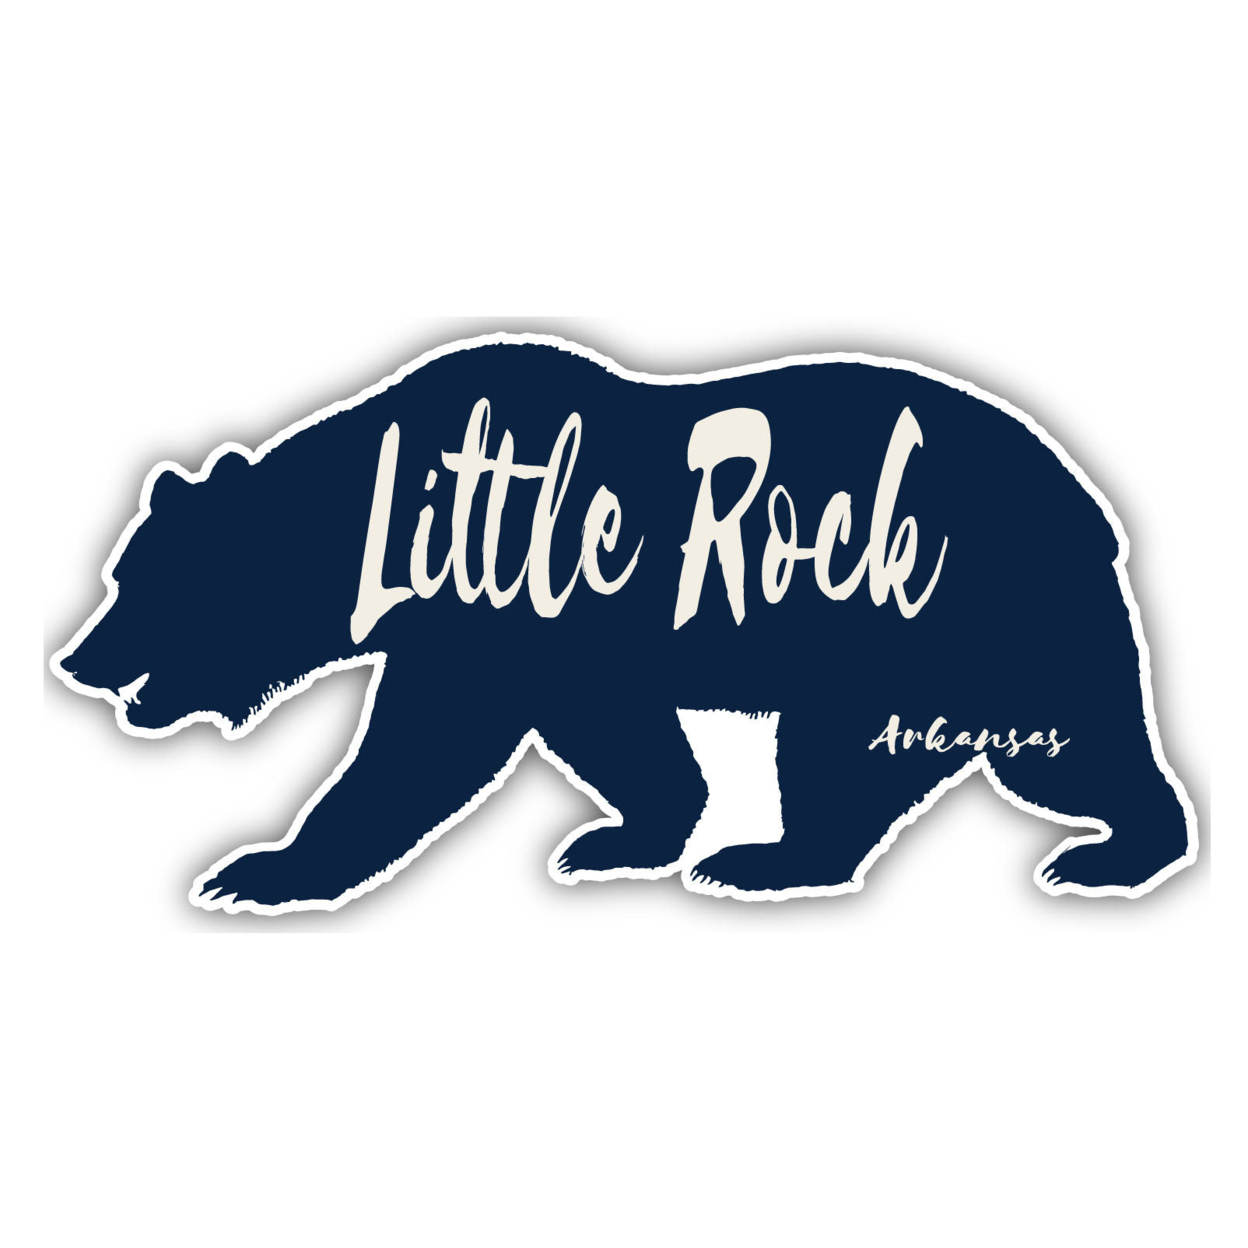 Little Rock Arkansas Souvenir Decorative Stickers (Choose Theme And Size) - 4-Inch, Tent